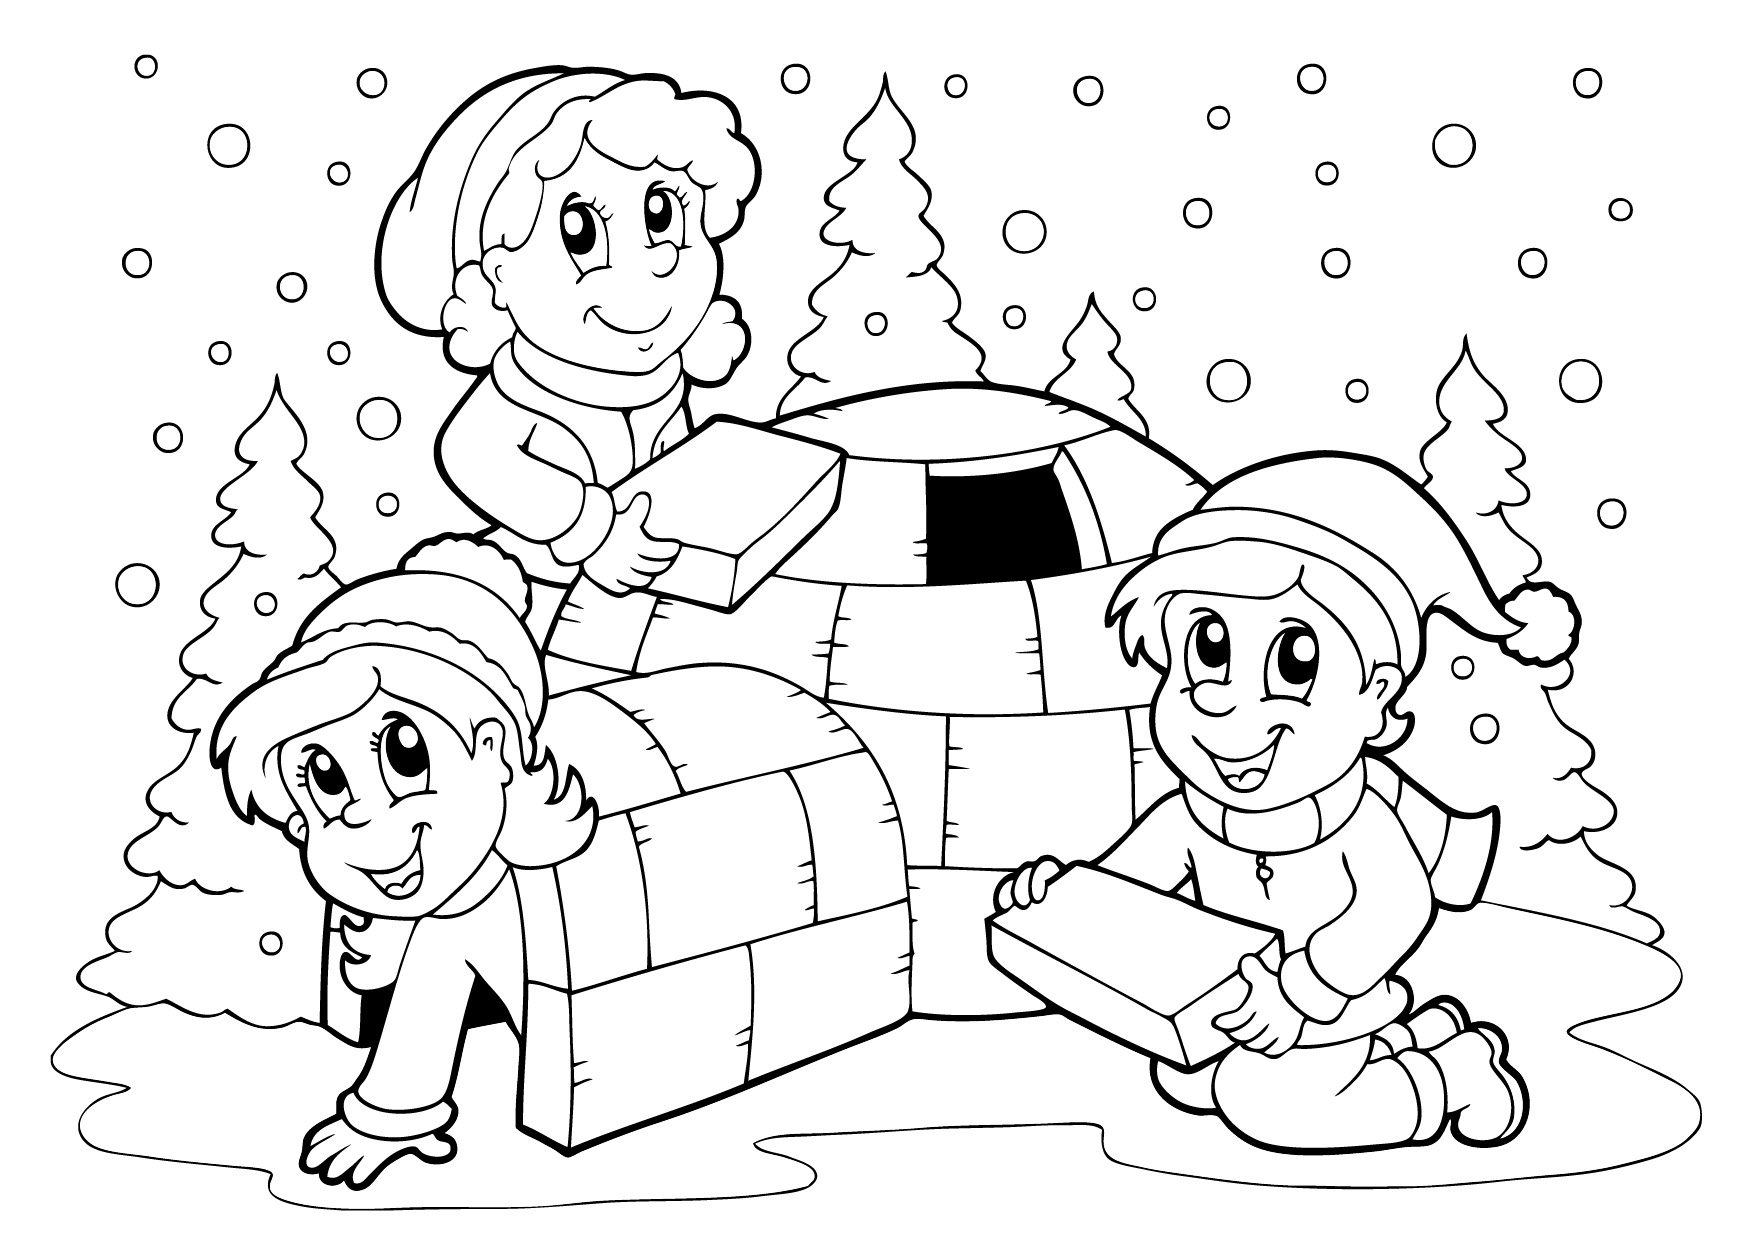  раскраски на тему зима для детей         раскраски на тему зима для мальчиков и девочек.  раскраски с зимой для детей и взрослых                                                                              